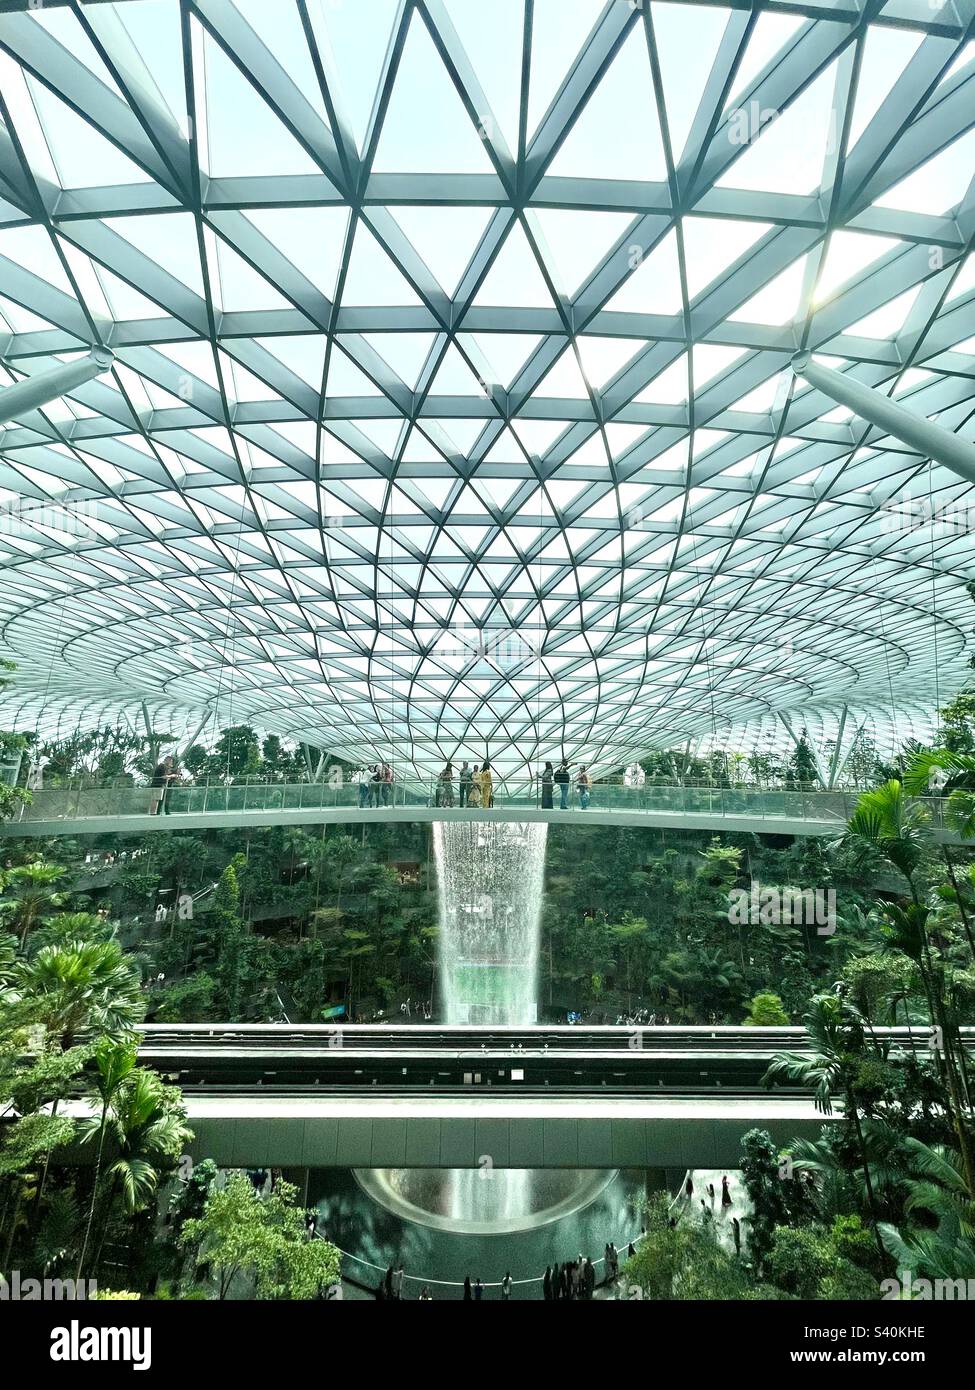 Chute d'eau intérieure de la Rain Vortex et Shiseido Forest Valley à l'aéroport de Jewel Changi. Banque D'Images